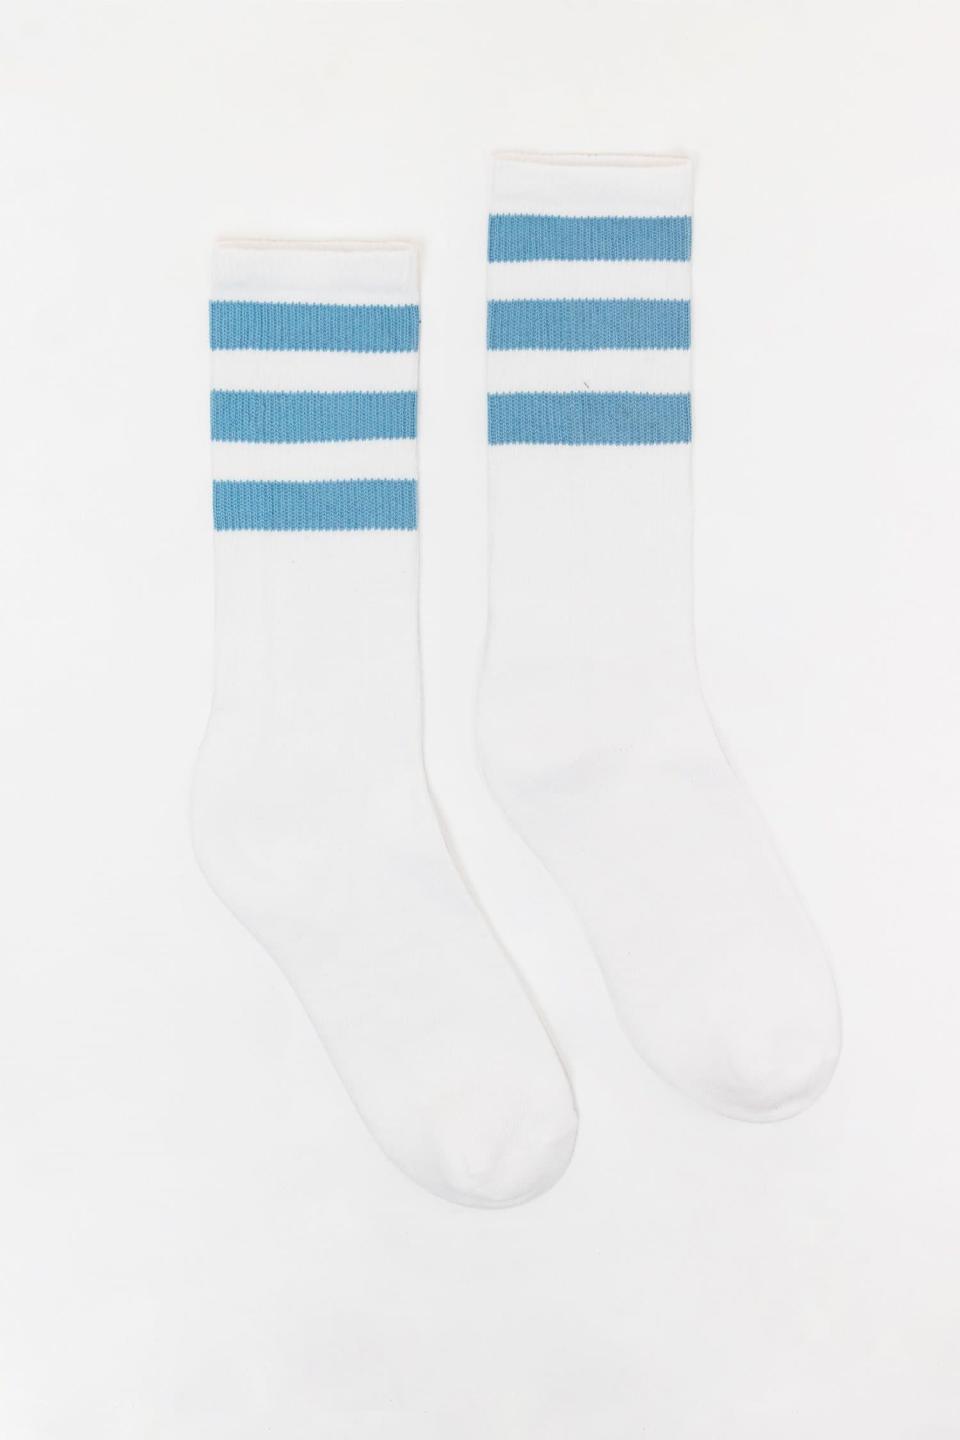 crew socks with stripes